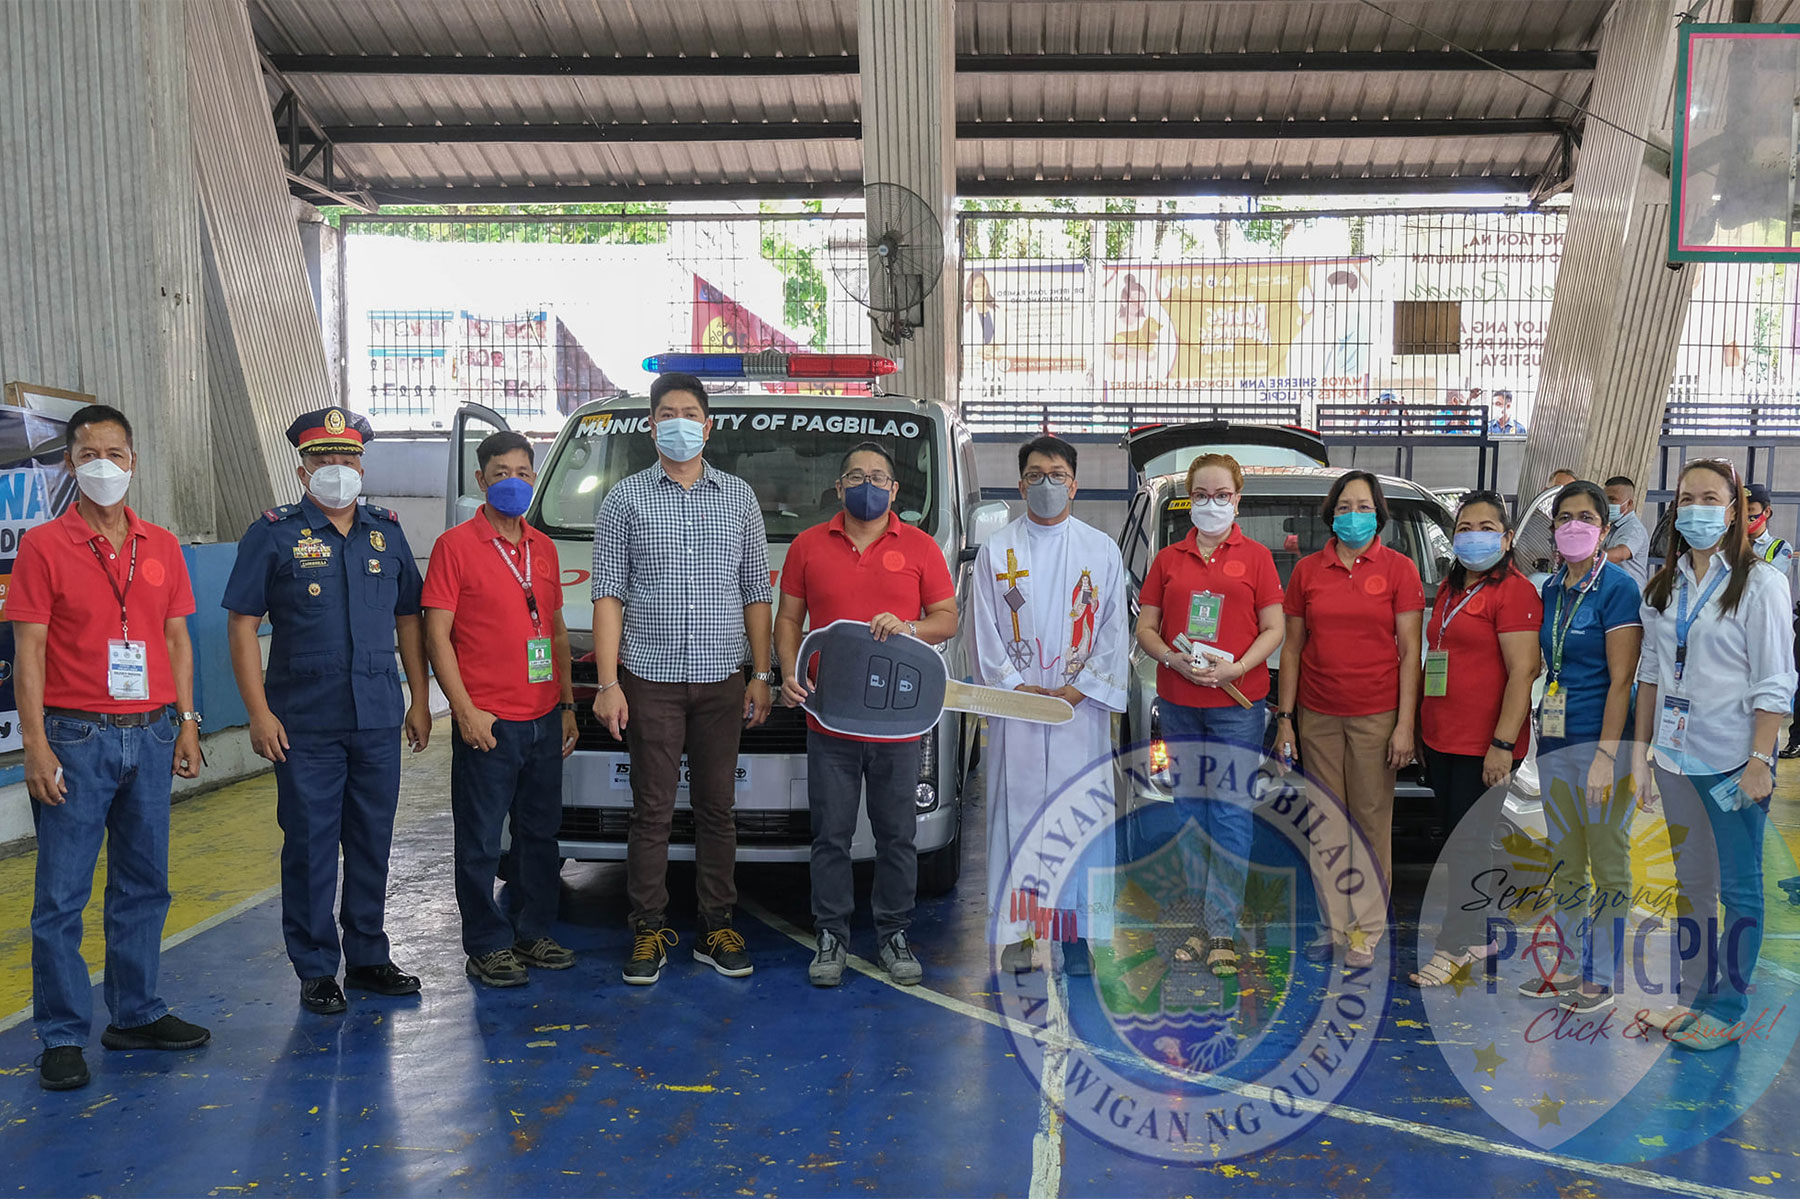 Bagong Ambulansya handog para sa PagbilaoWINS